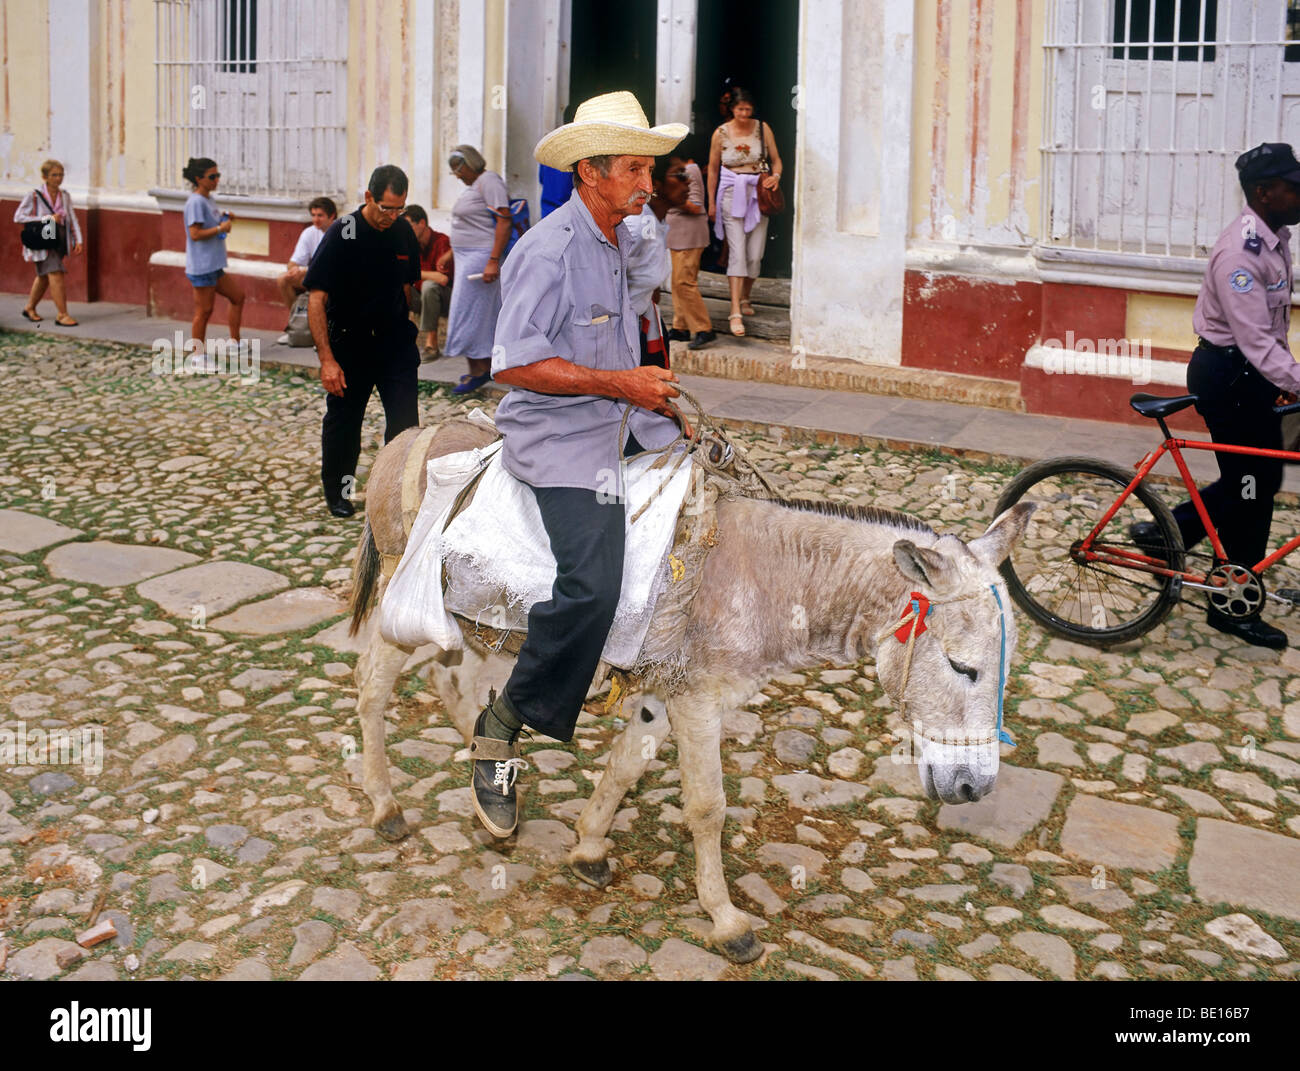 Donkey rider, Trinidad. Cuba Stock Photo